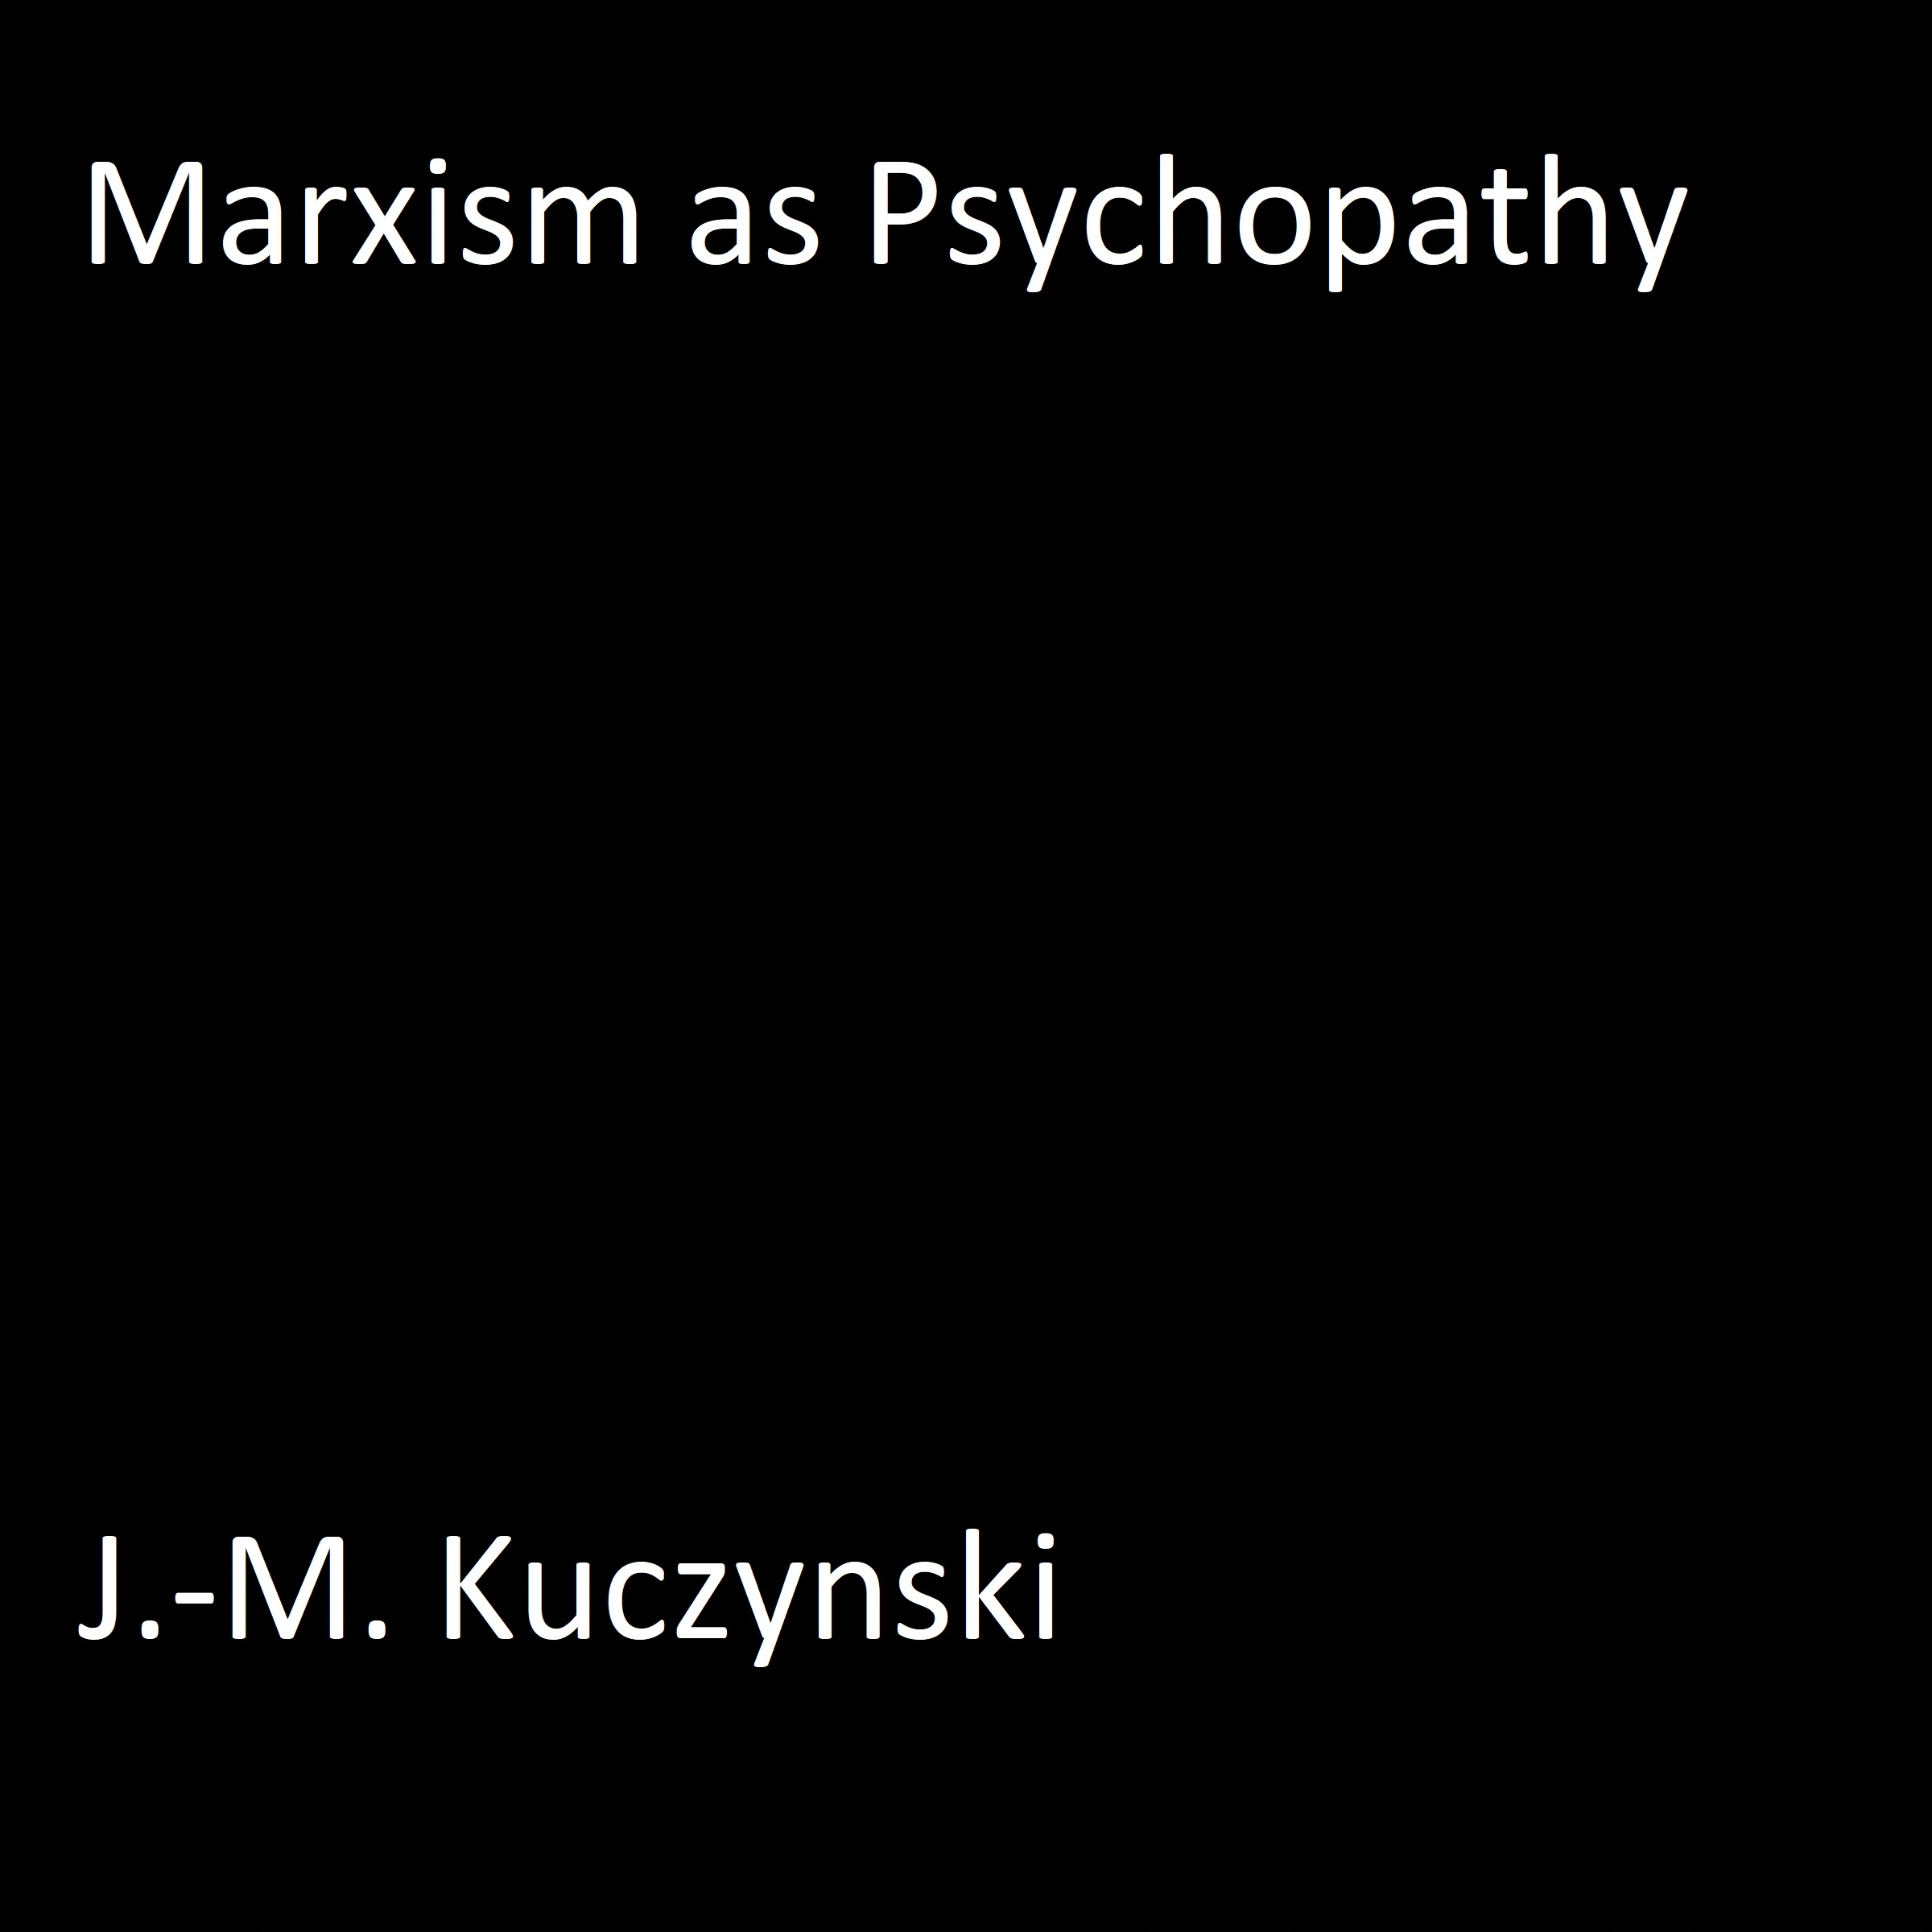 Marxism as Psychopathy Audiobook by J.-M. Kuczynski